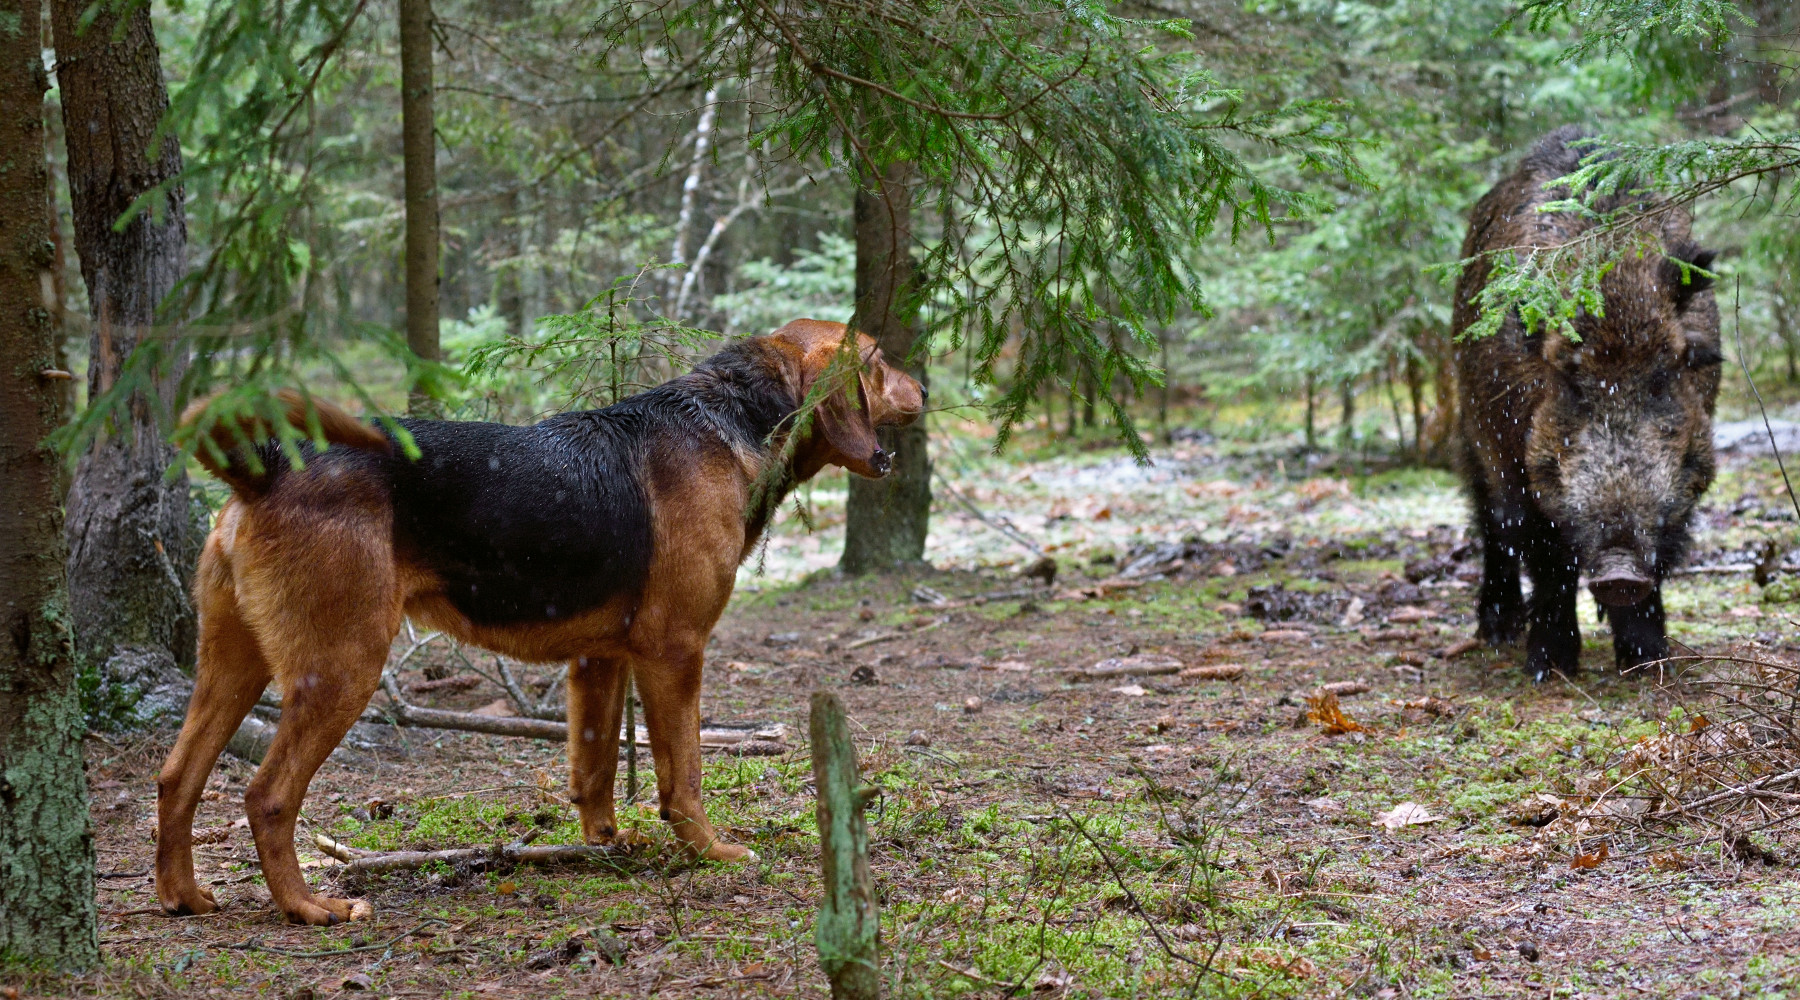 Approvato il nuovo brevetto per cane limiere e girata: segugio ferma cinghiale nel bosco